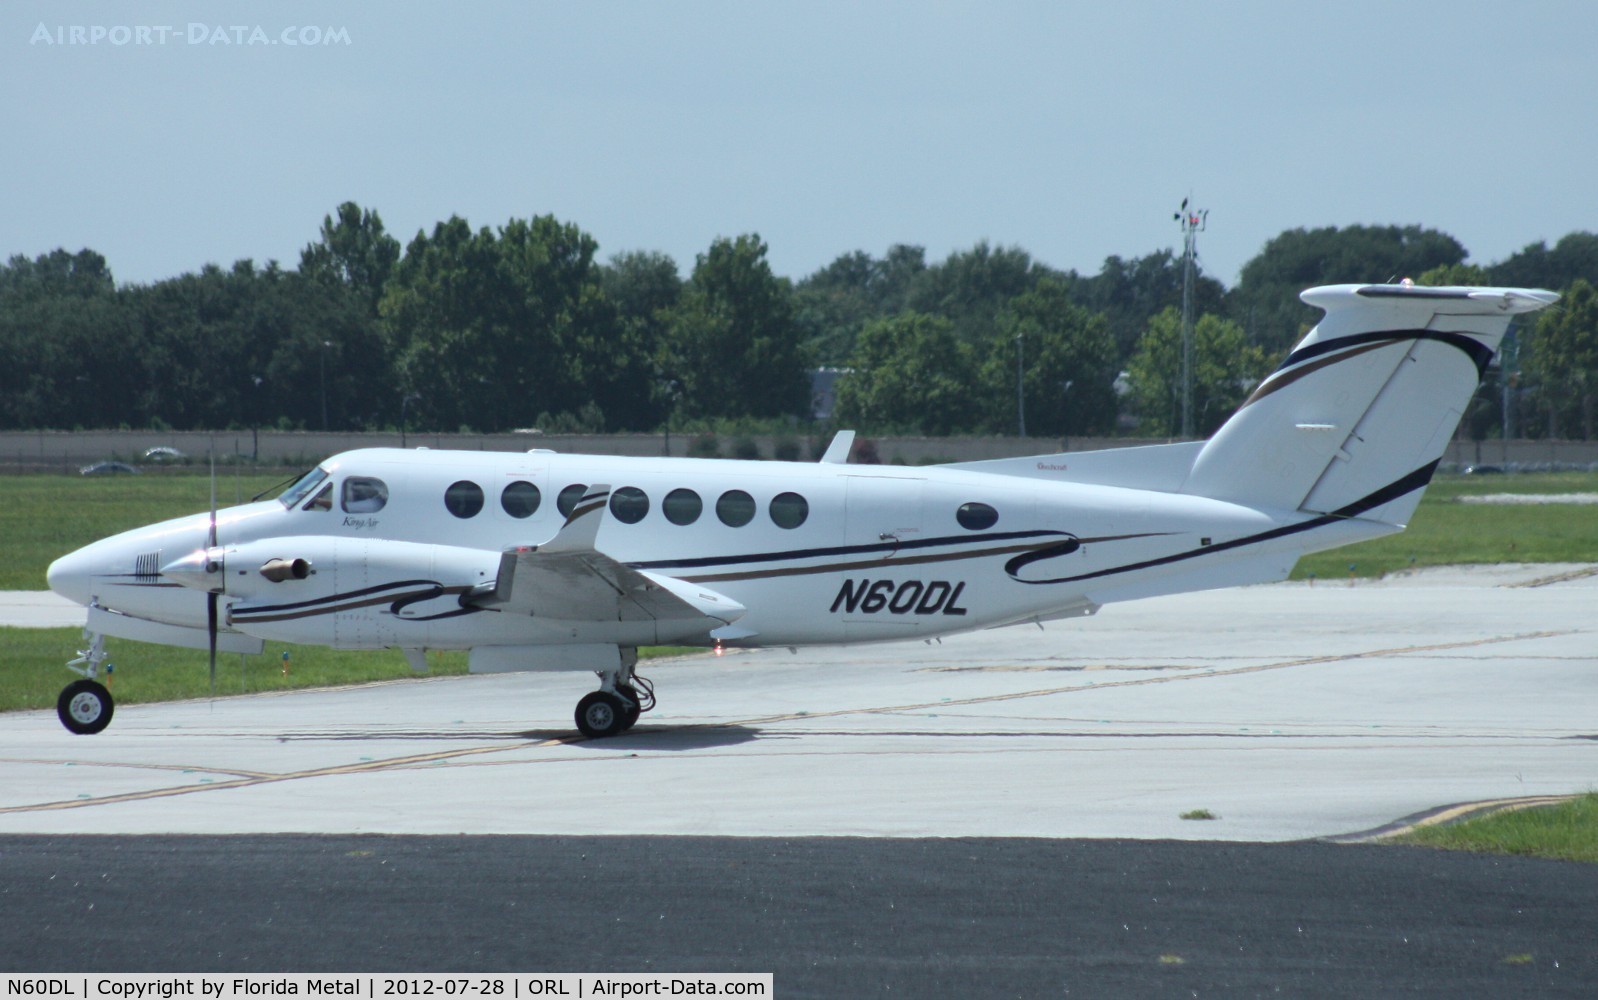 N60DL, 2005 Raytheon Aircraft Company B300 C/N FL-446, King Air 350